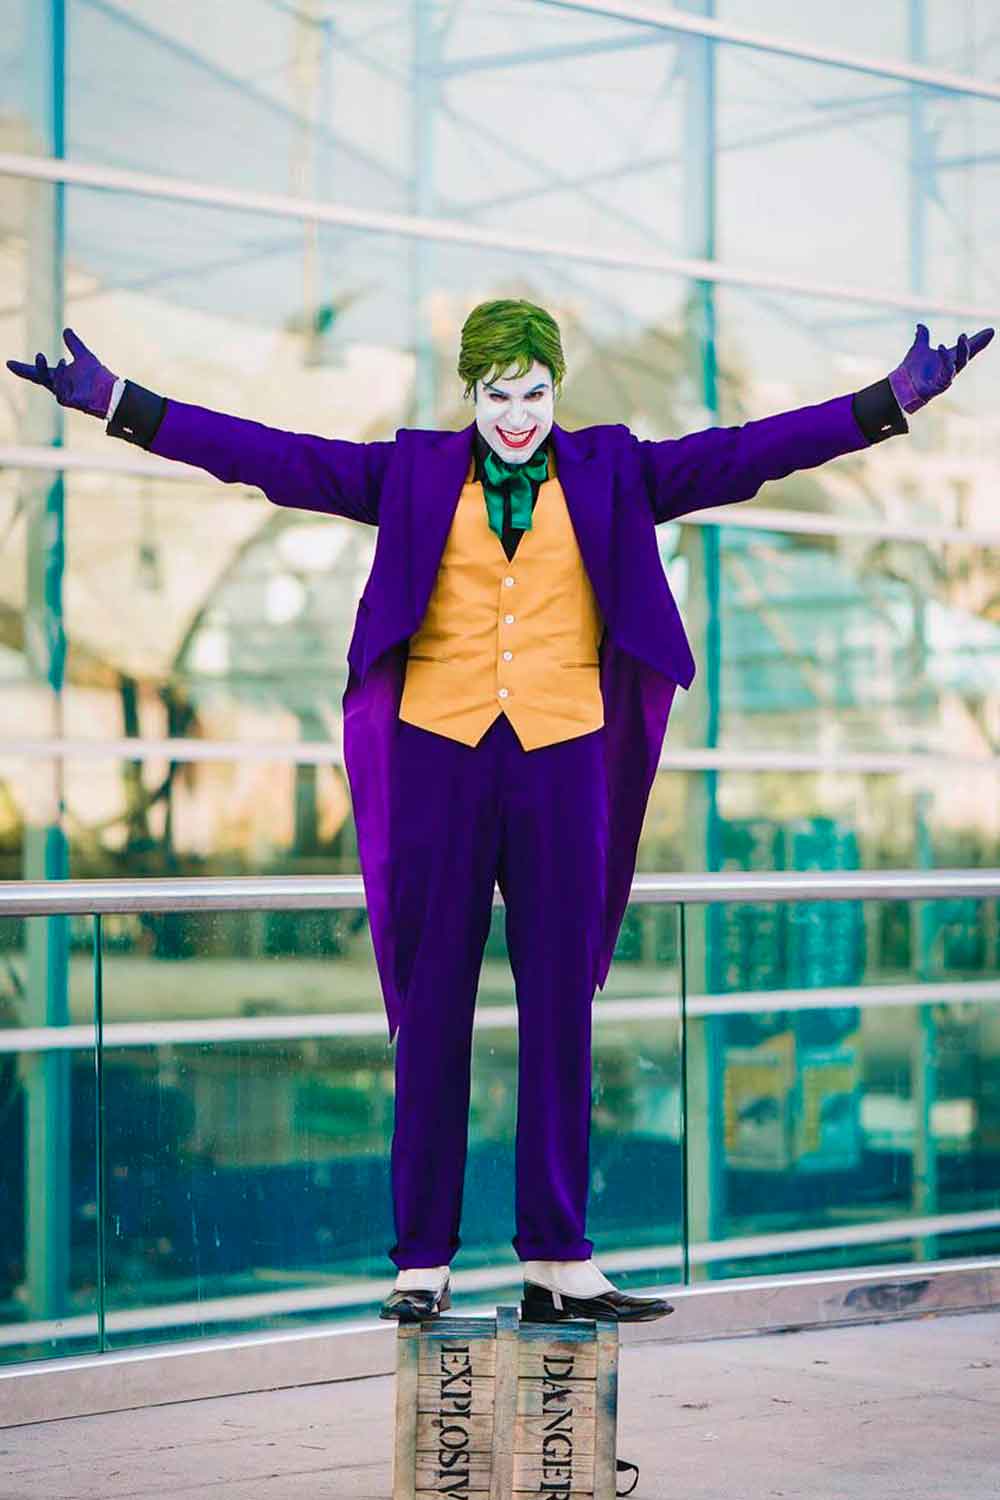 Joker #menshalloweencostumes #haloweencostumeideasmen #halloweencostumes